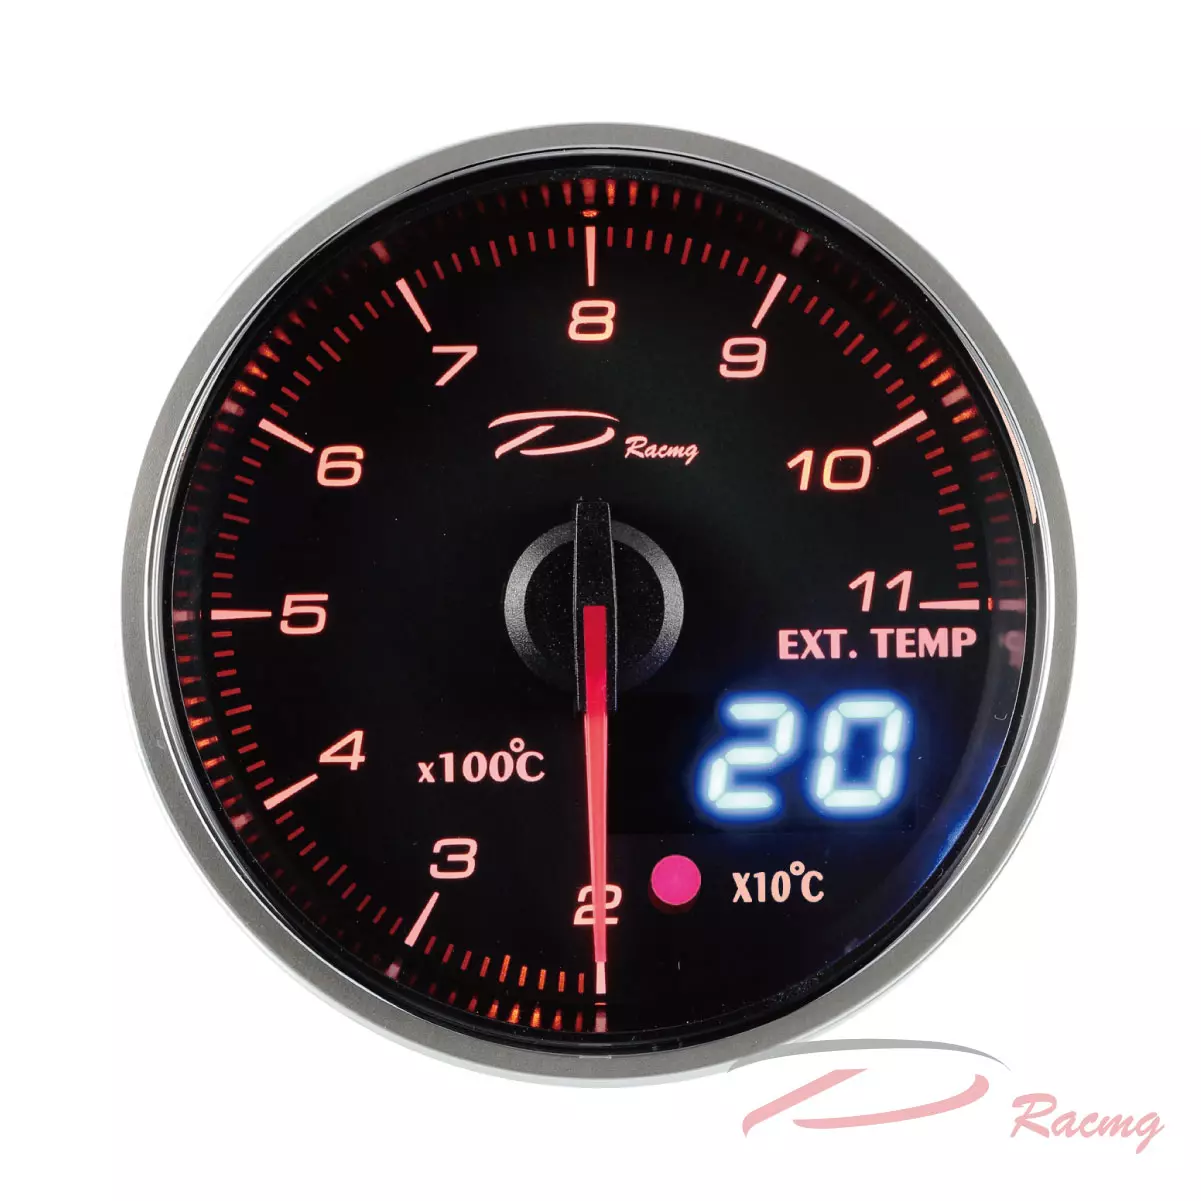 Dracing, Depo racing, car gauges, auto gauge, digital gauges, gauge set, aftermarket gauges, digital car gauges, racing gauges, truck gauges, dash gauges